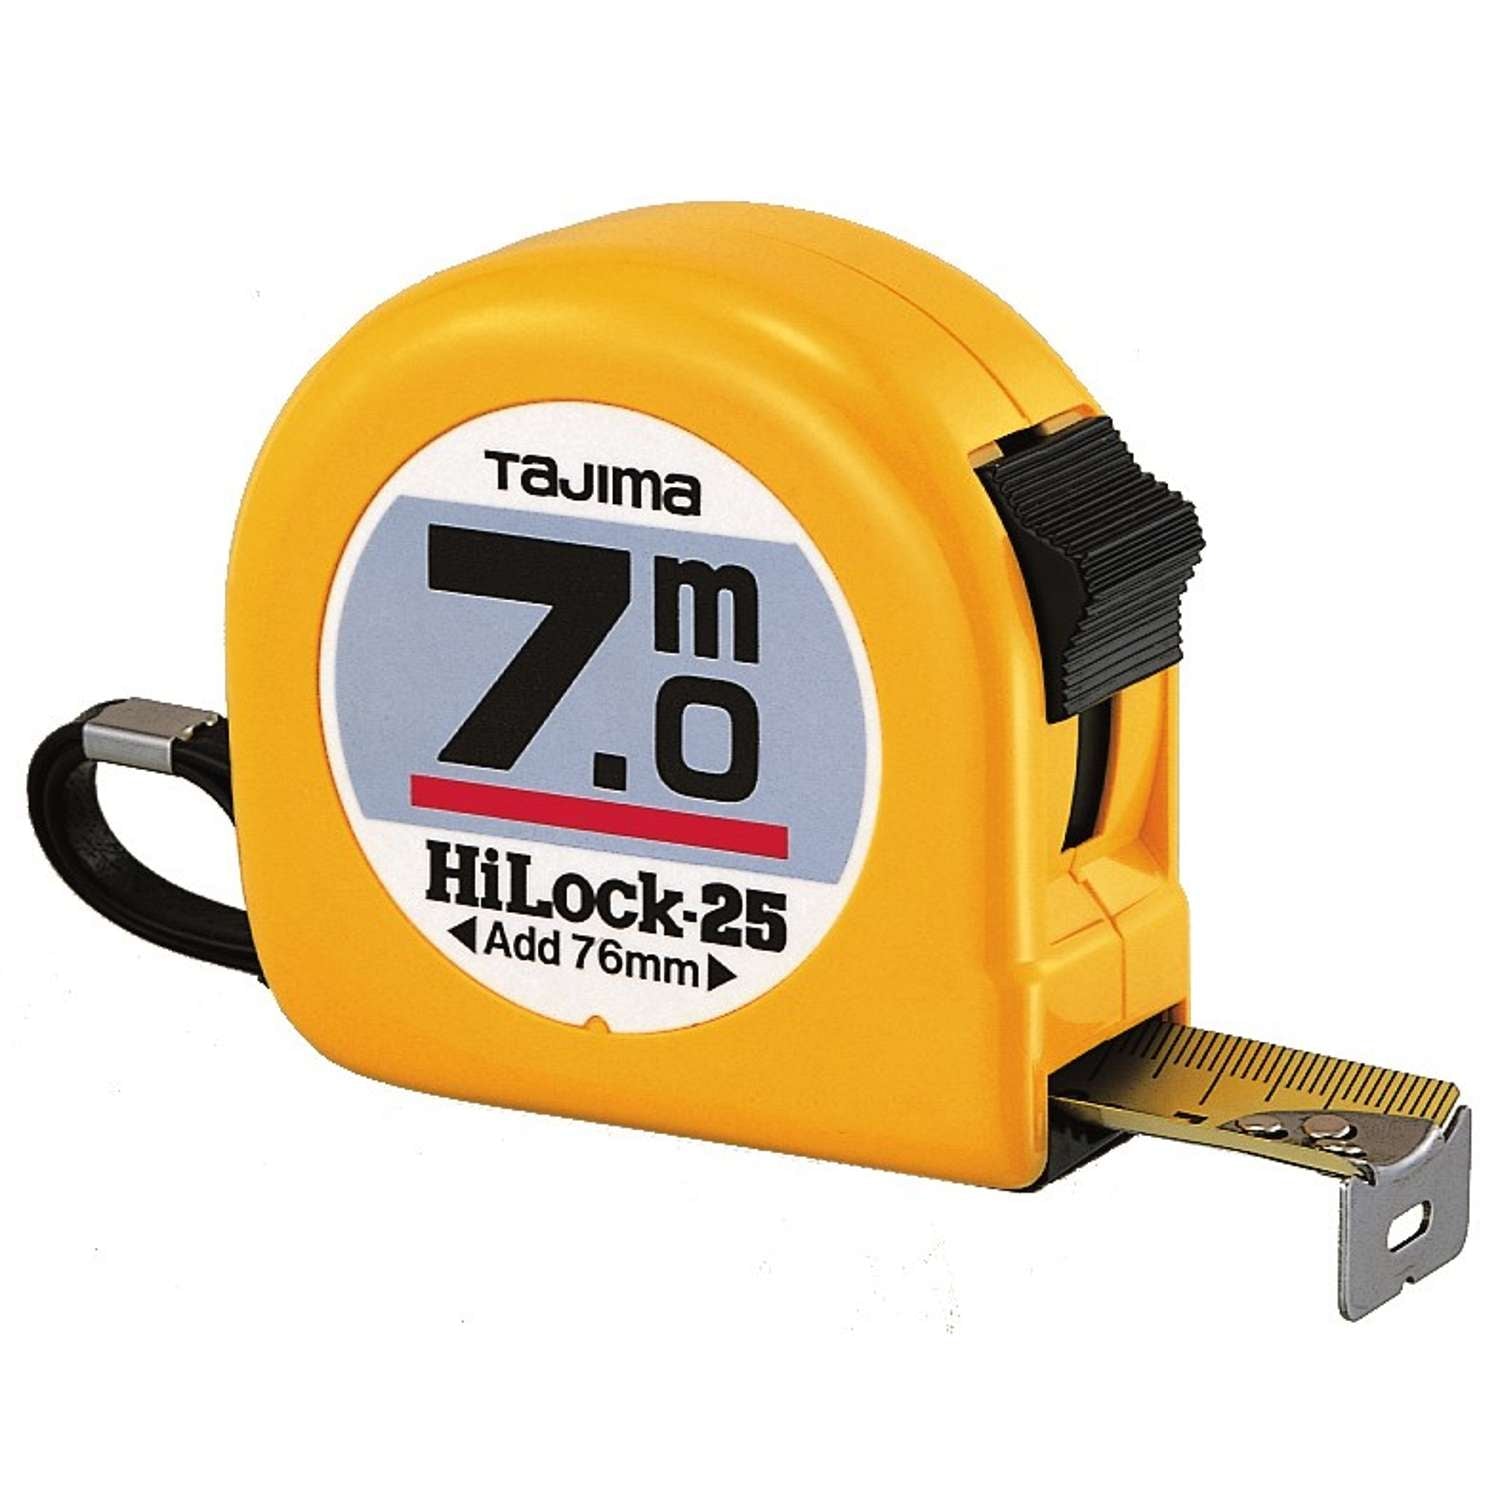 Tajima båndmål 7m Hi Lock 25mm